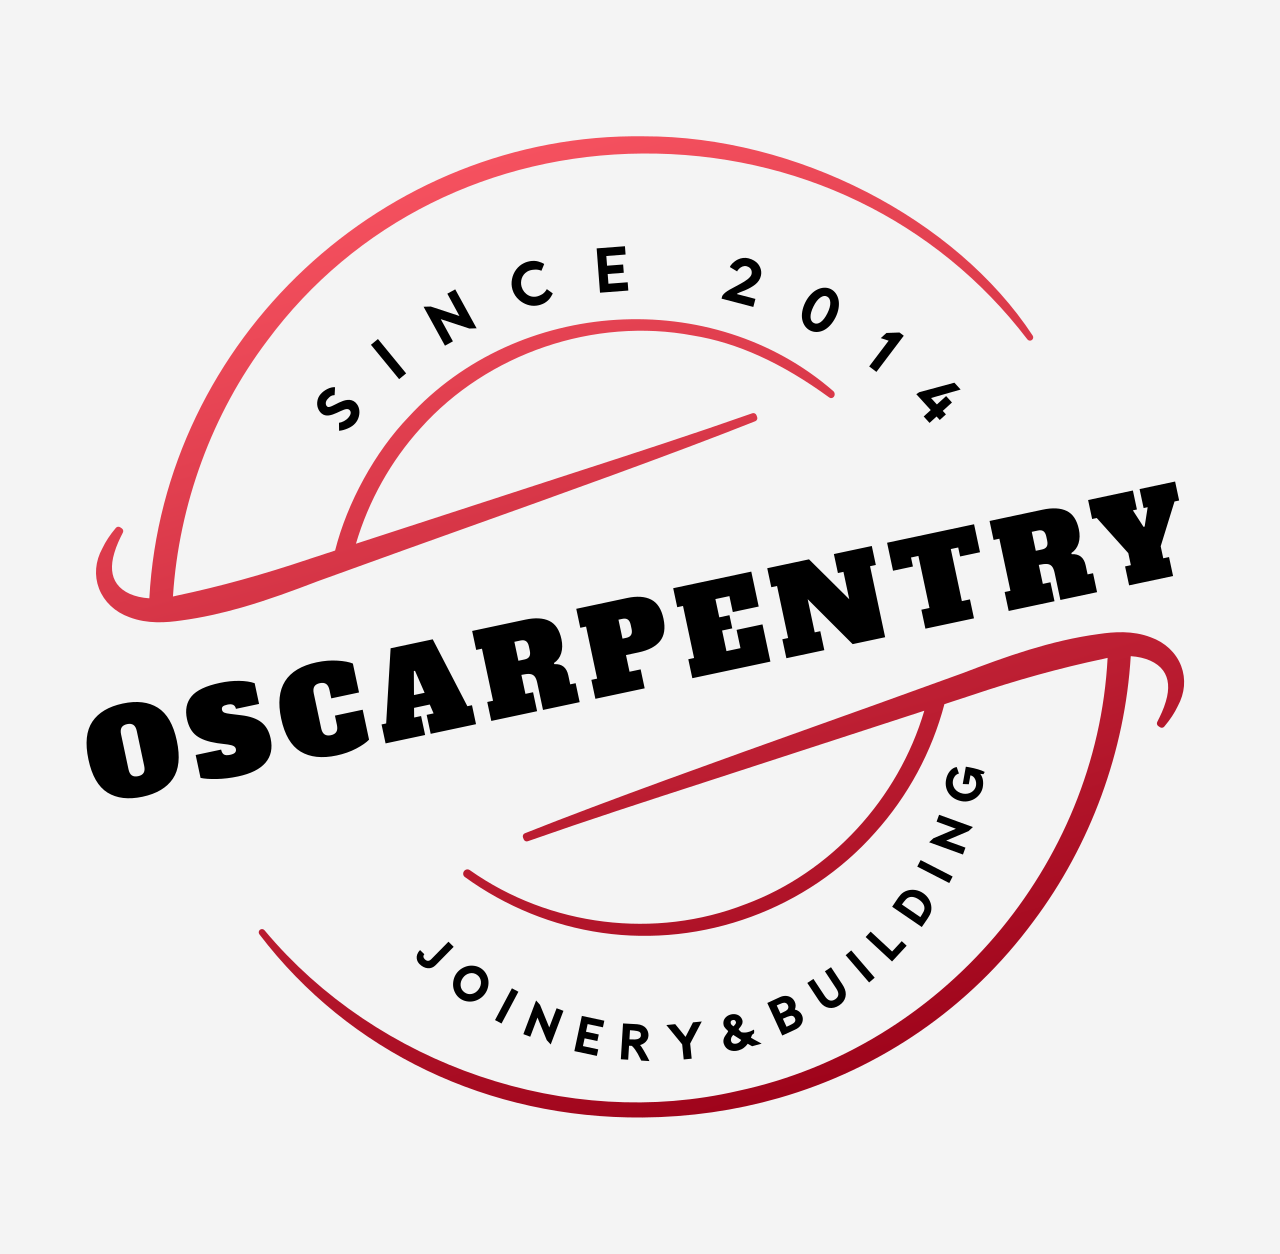 OScarpentry's web page